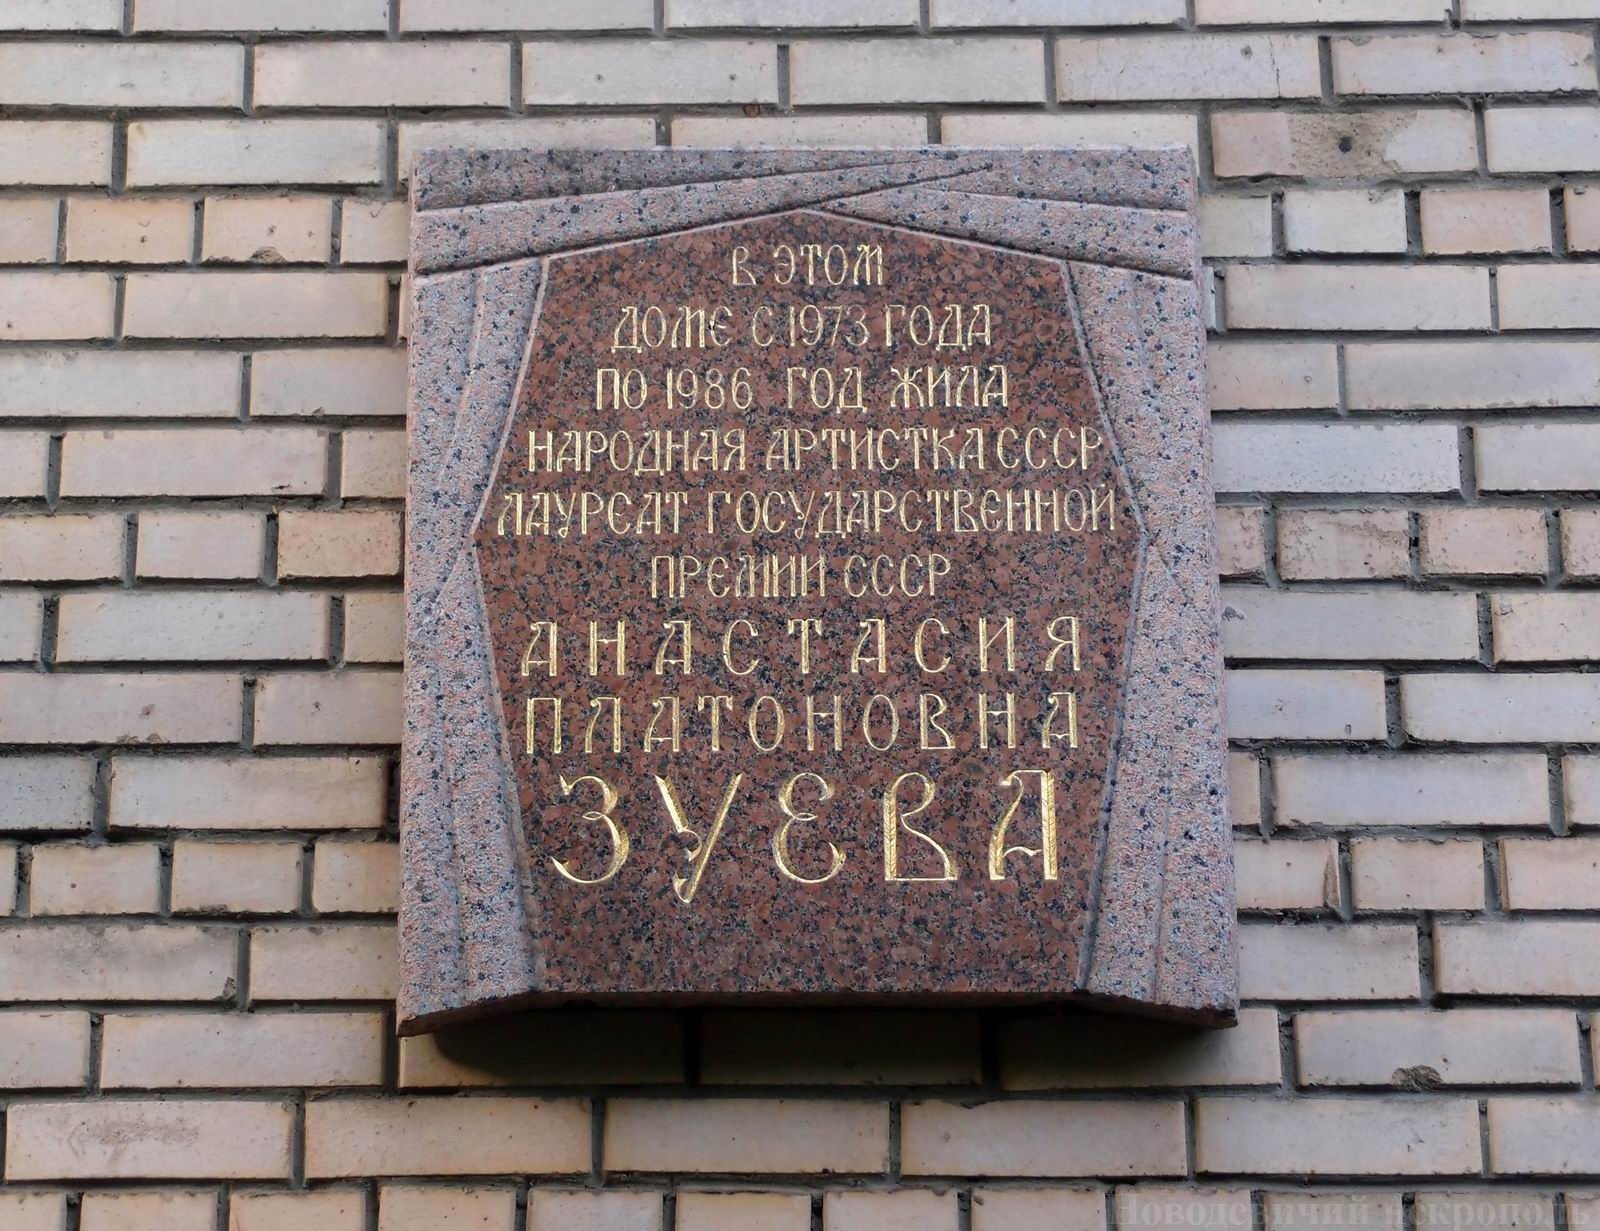 Мемориальная доска Зуевой А.П. (1896–1986), арх. В.В.Степанов, в Большом Палашевском переулке, дом 3, открыта 28.10.1988.